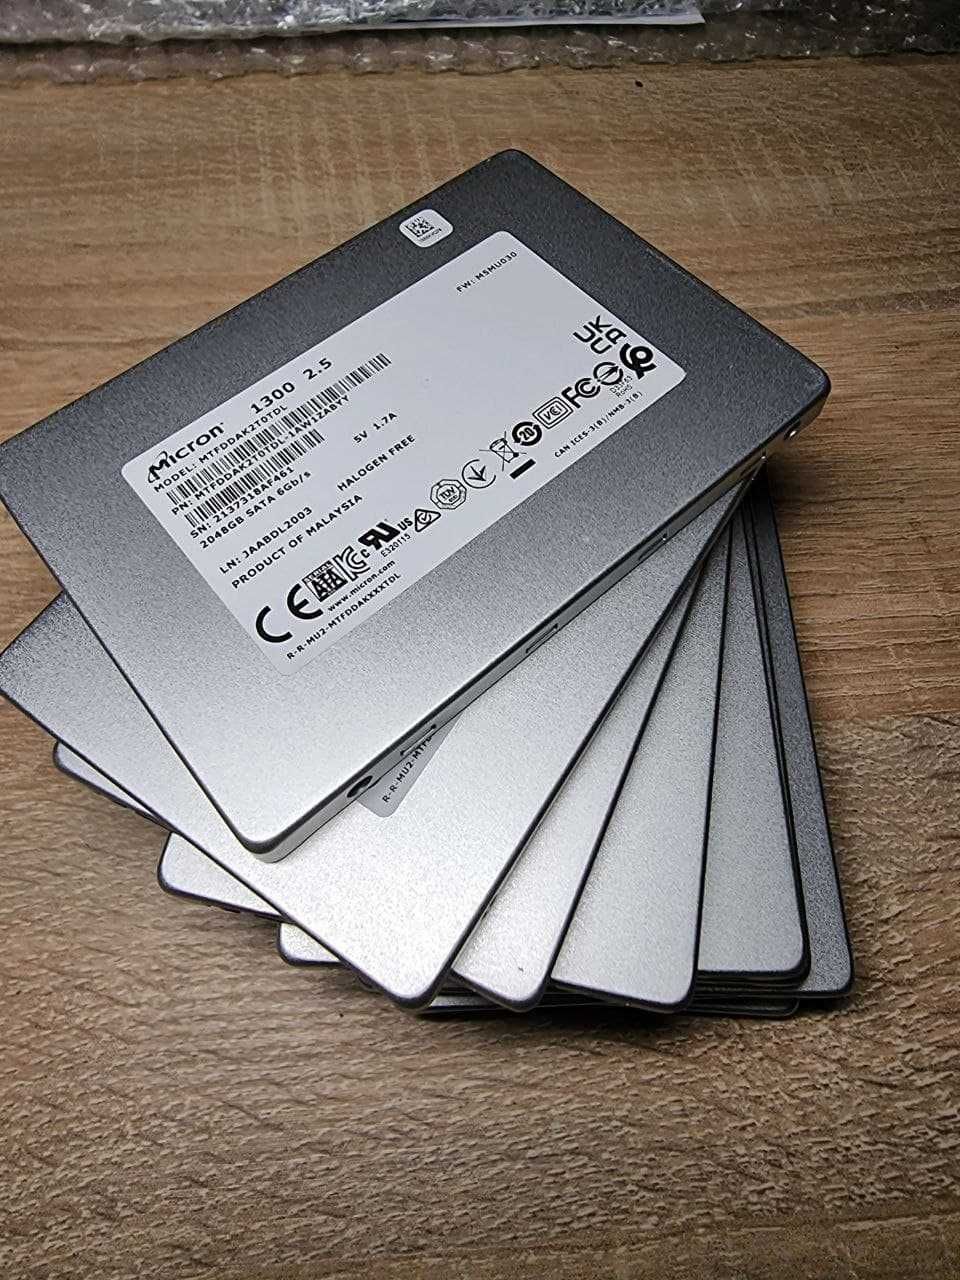 Накопичувач SSD диск SSD 2,5" 2TB Micron 1300 об'єм 2Tb  Роздріб/Гурт